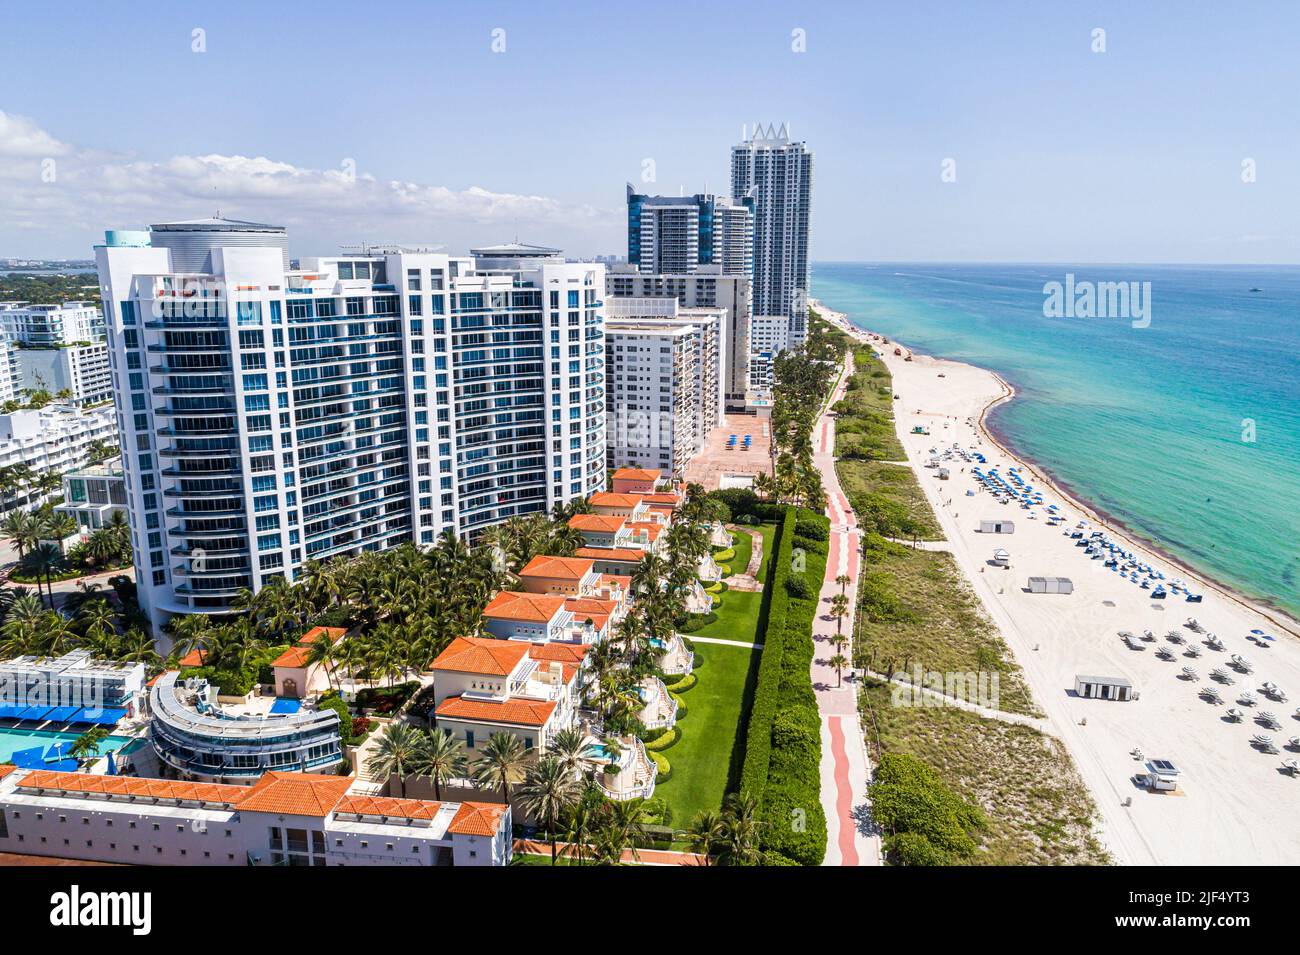 Miami Beach Florida, vista aerea dall'alto, spiaggia pubblica della costa dell'Oceano Atlantico, edifici condominali fronte mare, Bath Club Foto Stock